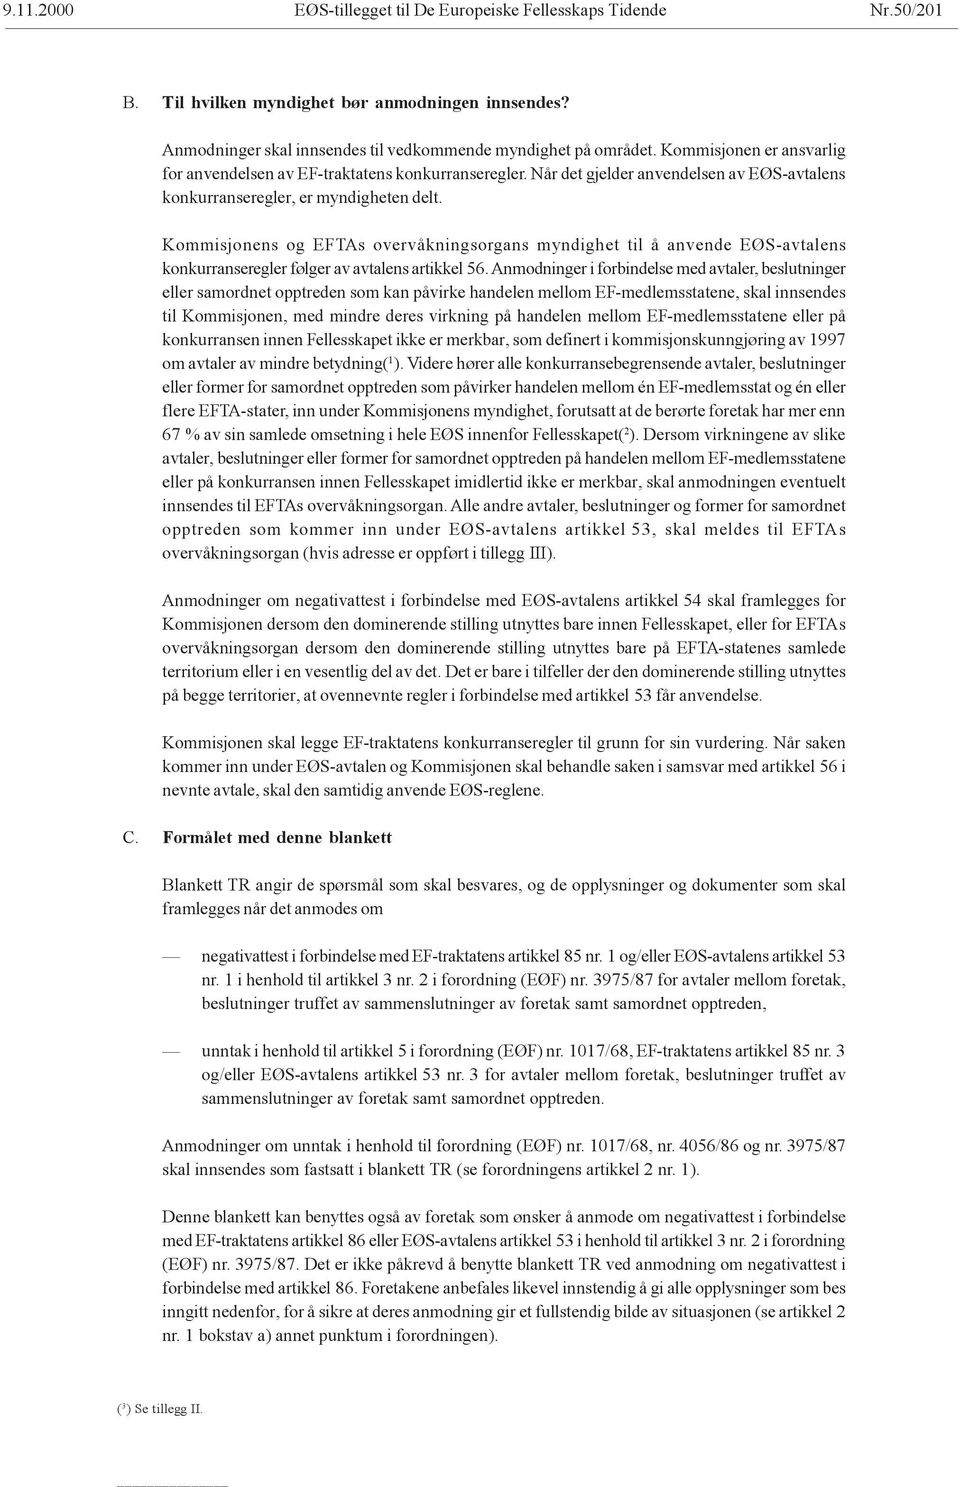 Kommisjonens og EFTAs overvåkningsorgans myndighet til å anvende EØS-avtalens konkurranseregler følger av avtalens artikkel 56.